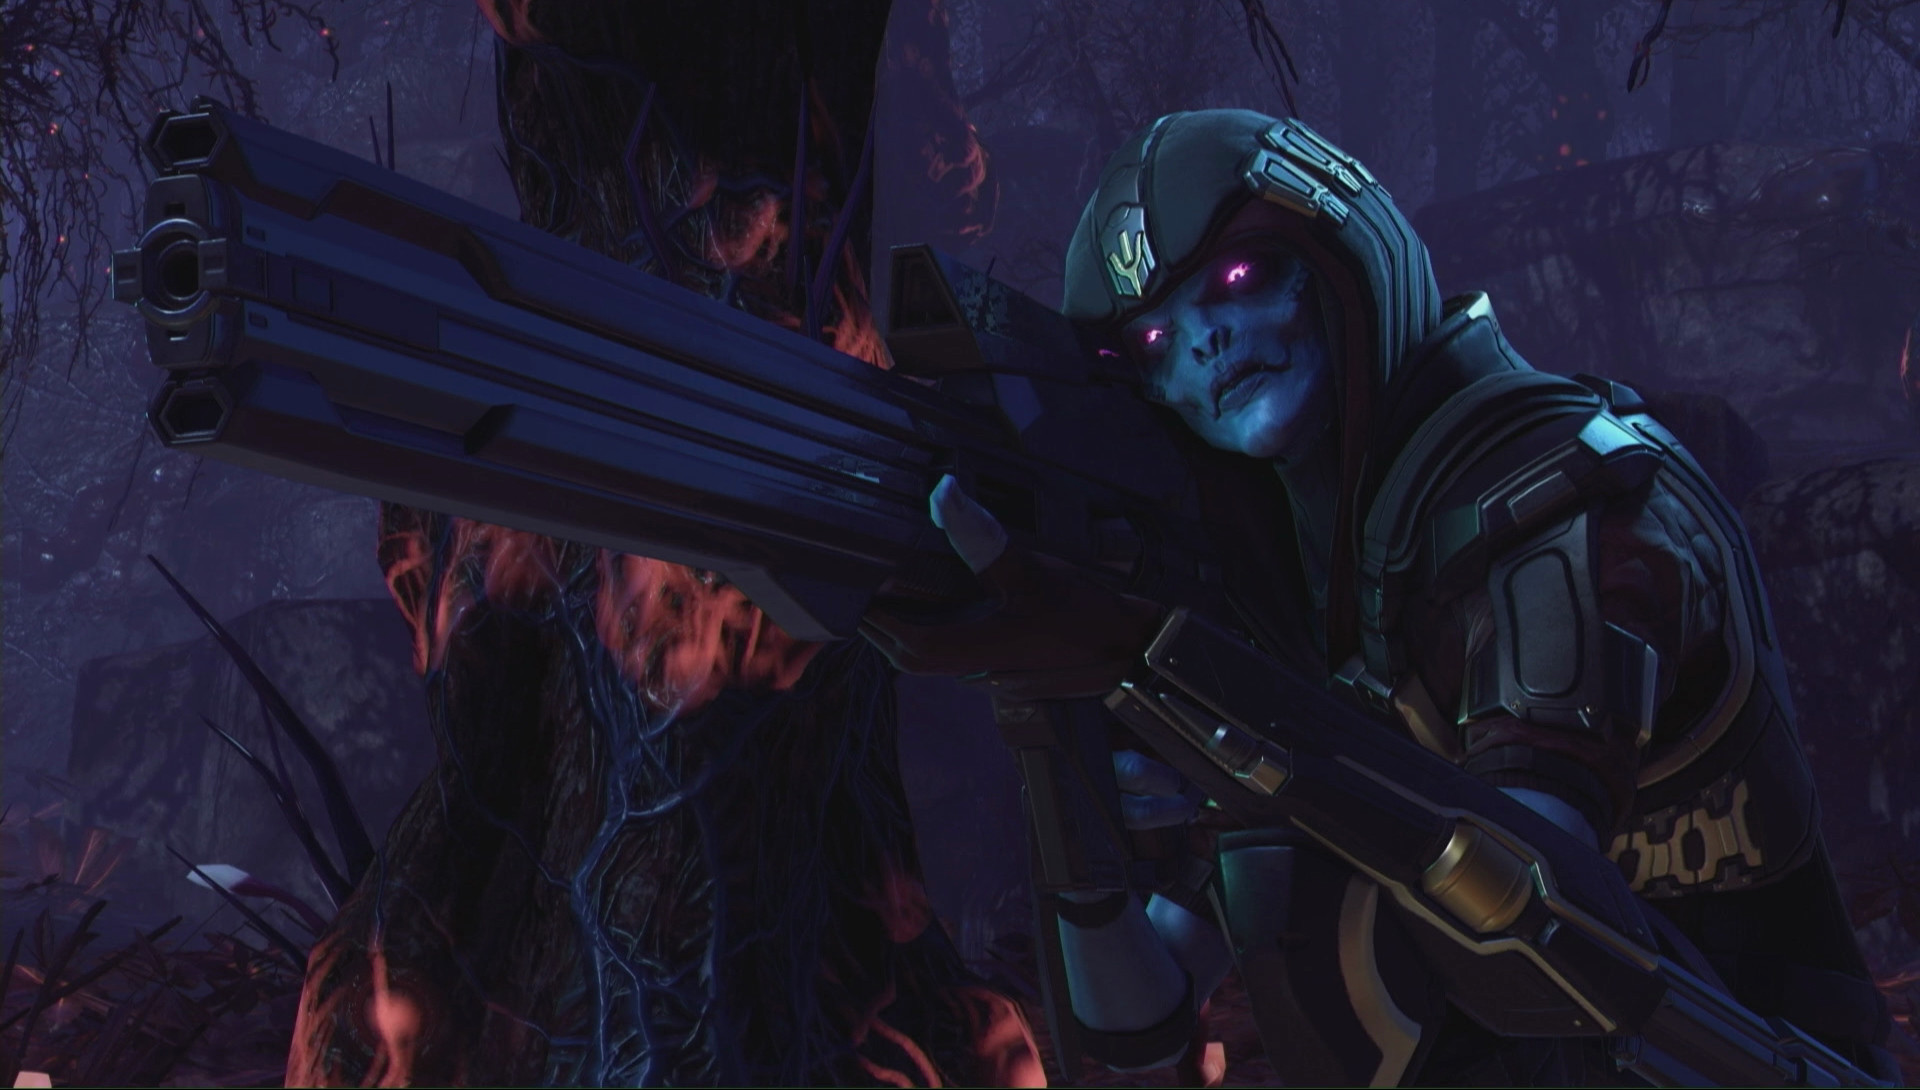 XCOM 2: War of the Chosen - Охотник прицеливается со своей винтовкой, стоя рядом с деревом